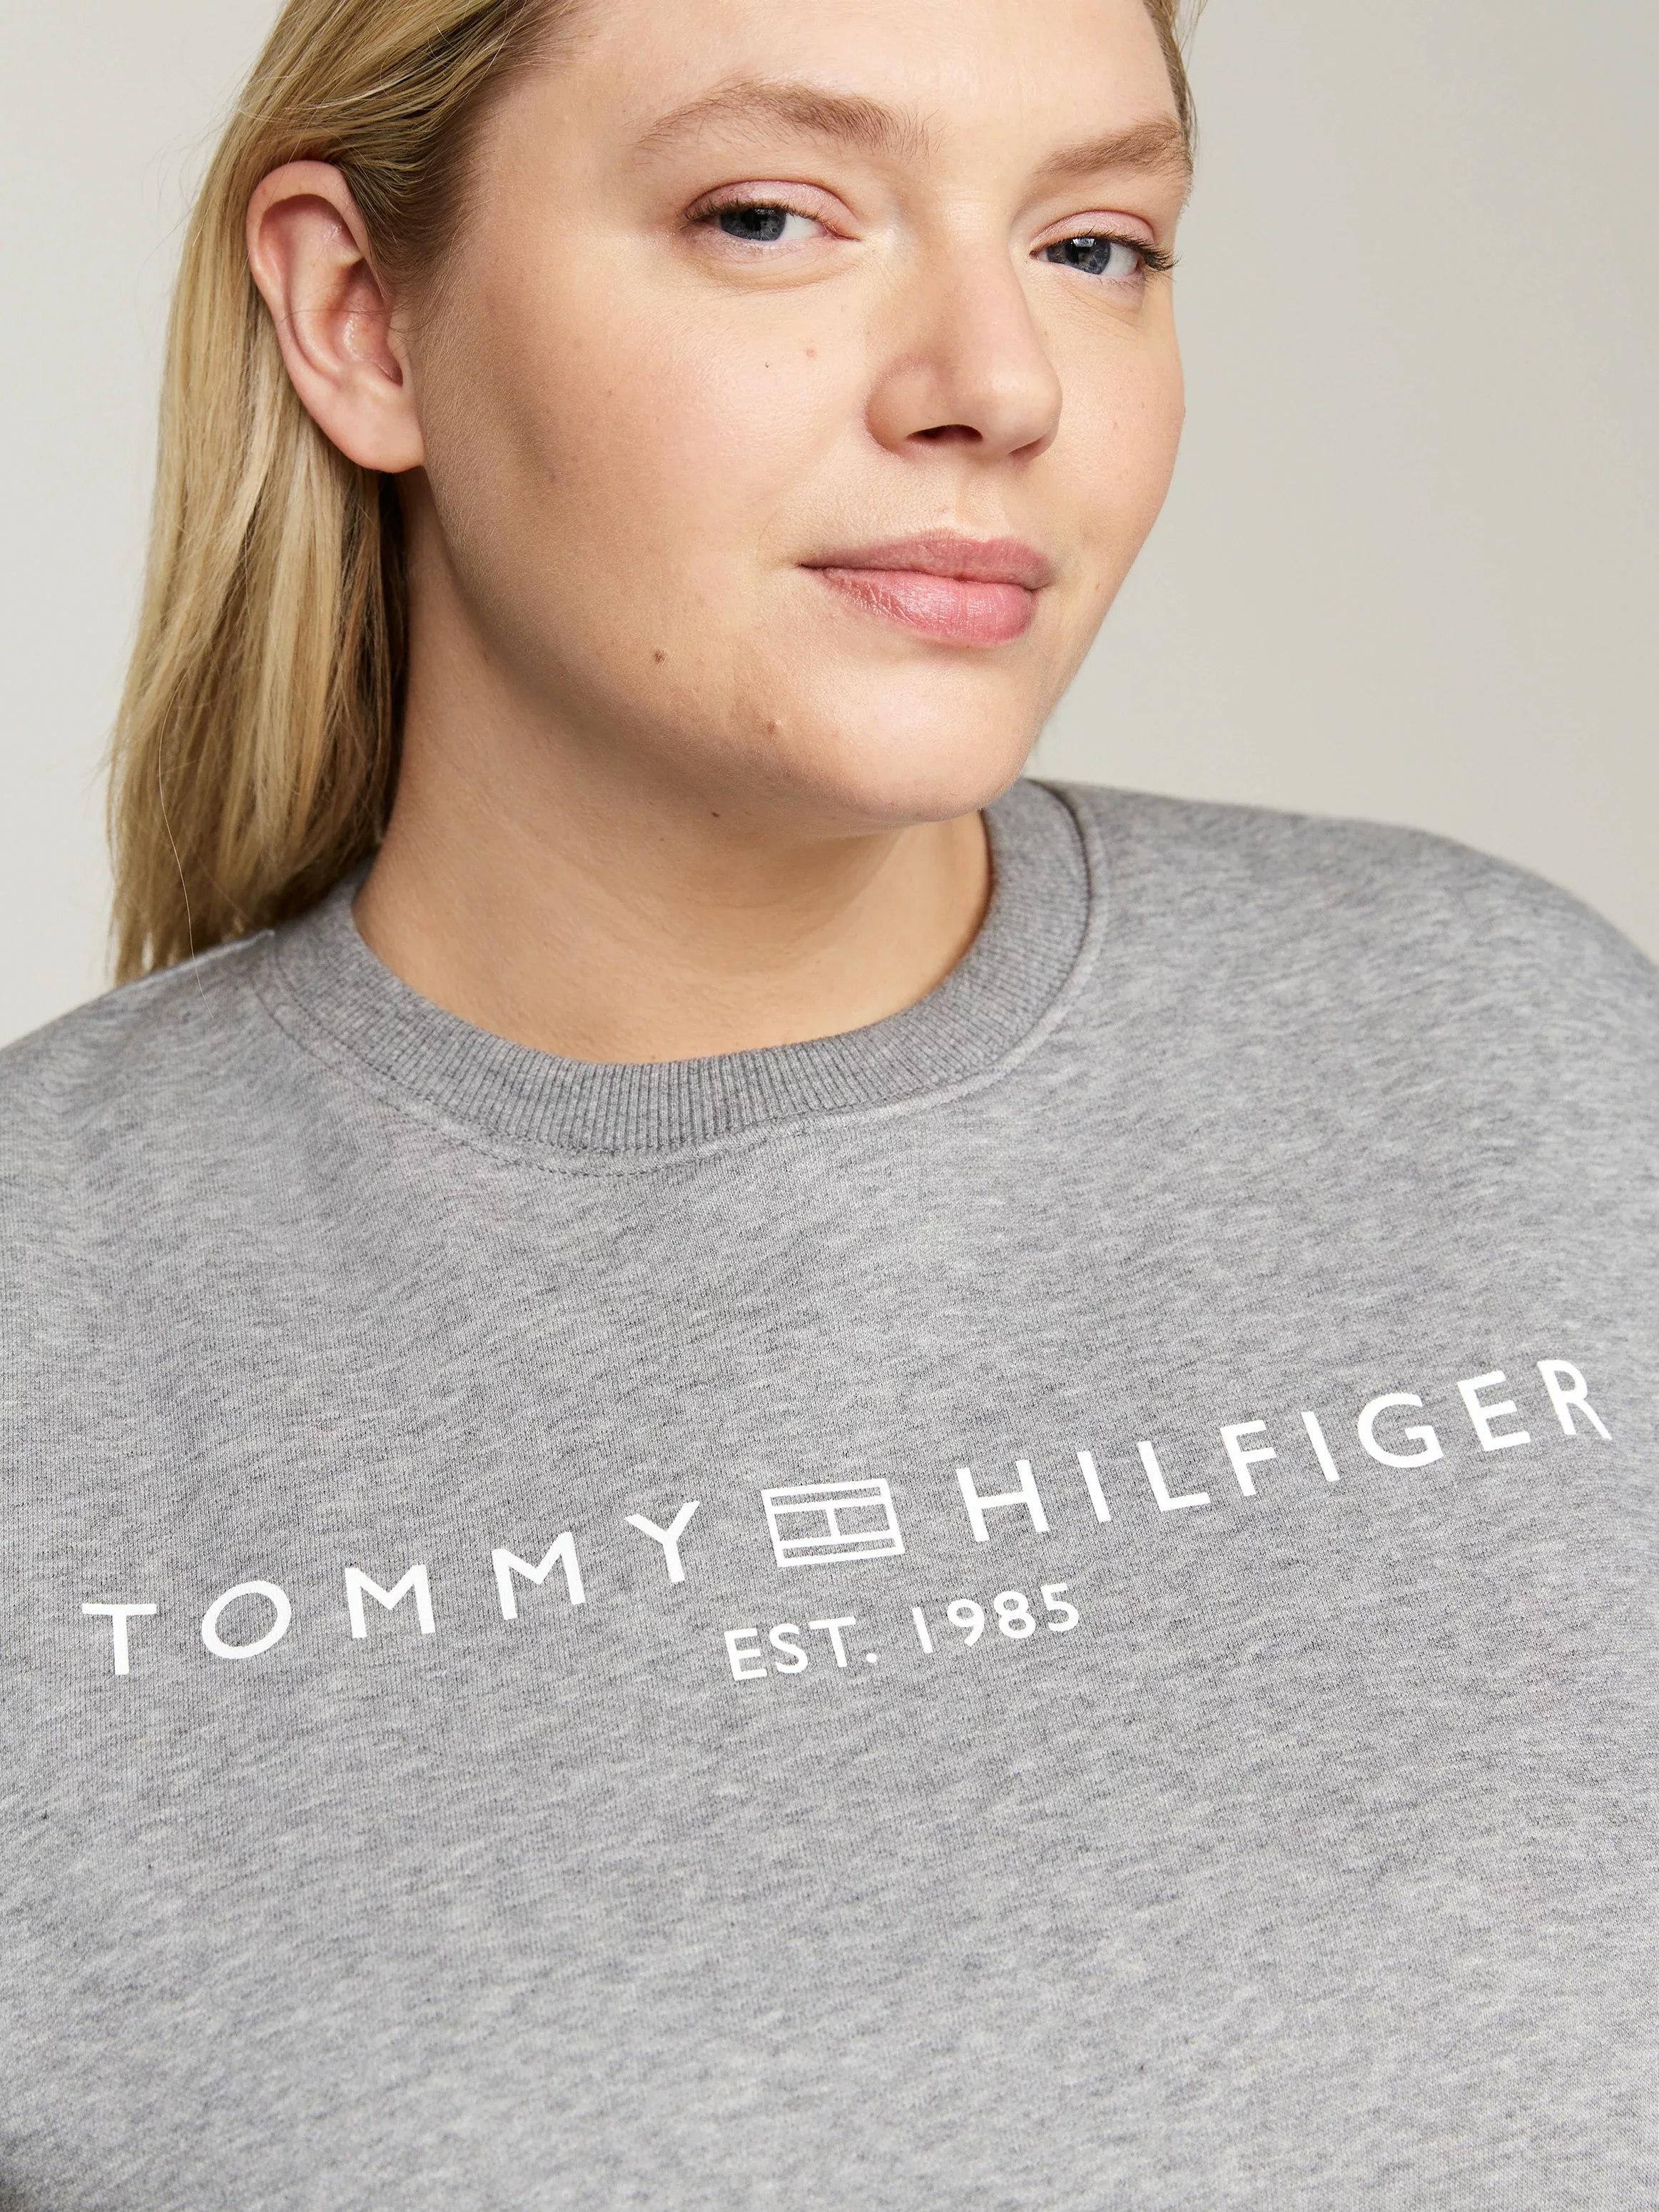 Tommy Hilfiger Curve Sweatshirt CRV MDRN REG CORP LOGO SWTSHRT mit Logostic günstig online kaufen